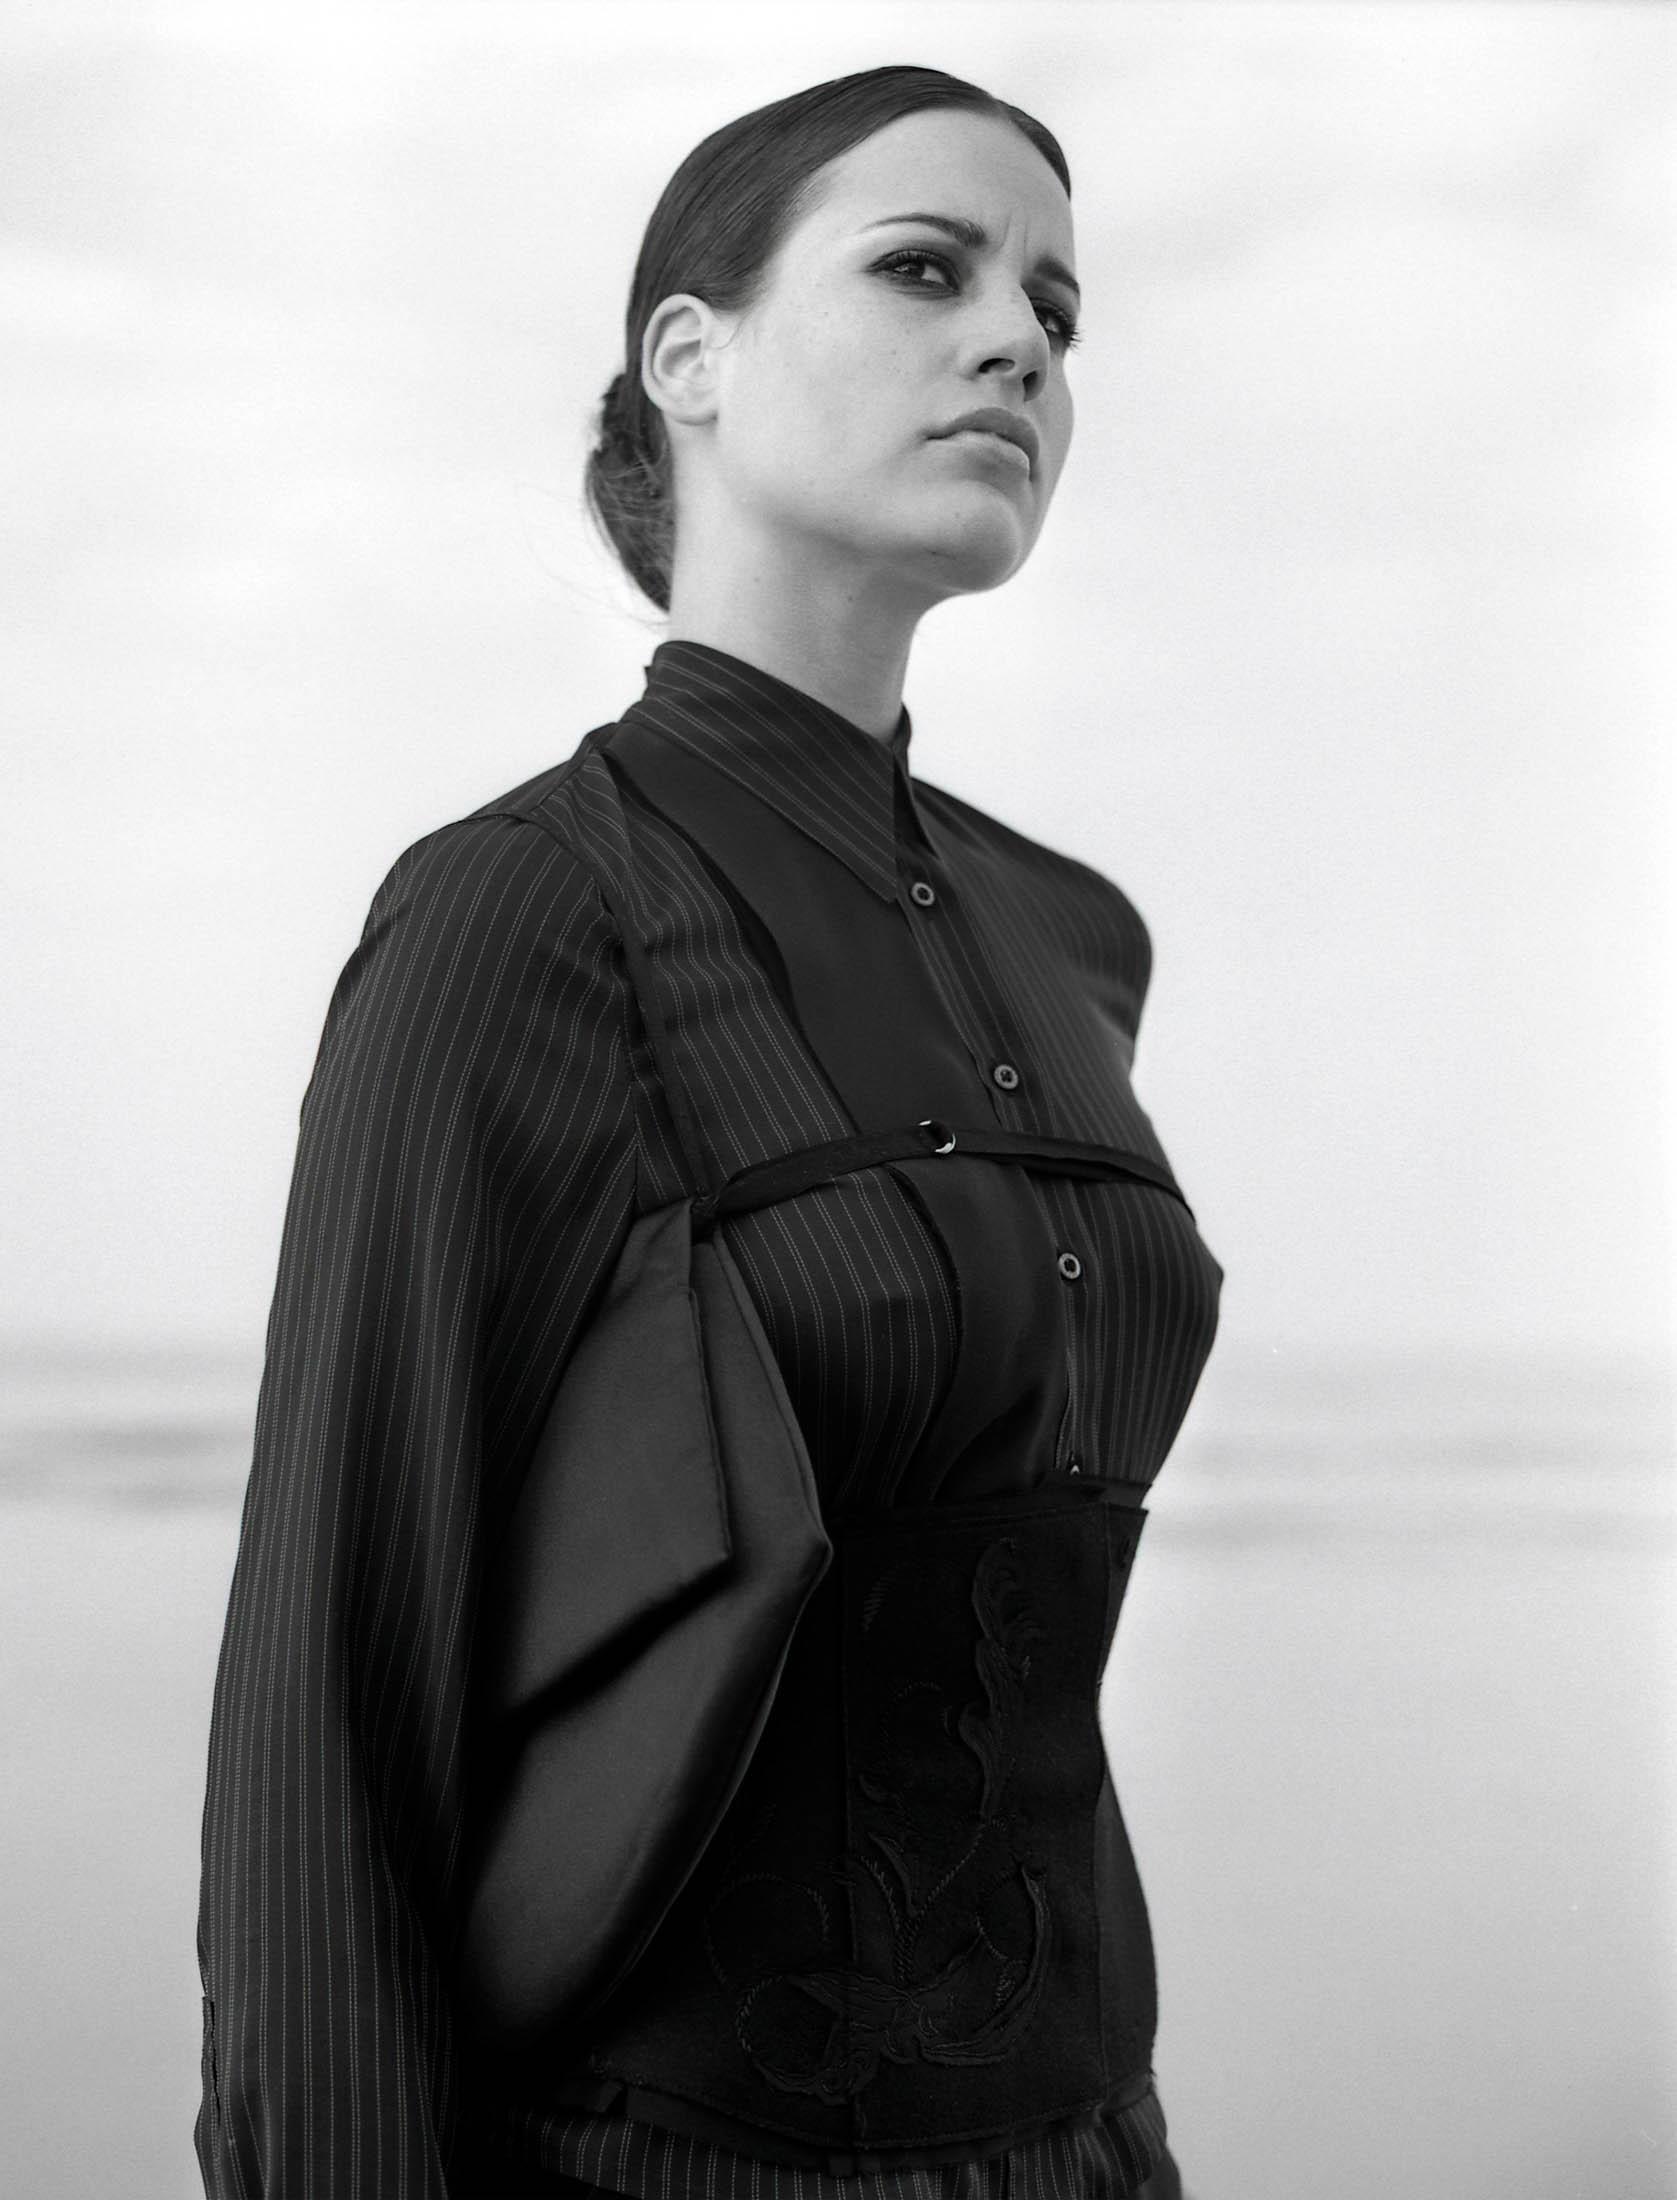 Ein Schwarzweißfoto einer Frau mit zurückgekämmten Haaren, die eine gestreifte Bluse und ein einzigartiges besticktes Korsett trägt und vor einem einfarbigen Hintergrund steht. Sie blickt mit ernster Miene zur Seite. © Fotografie Tomas Rodriguez